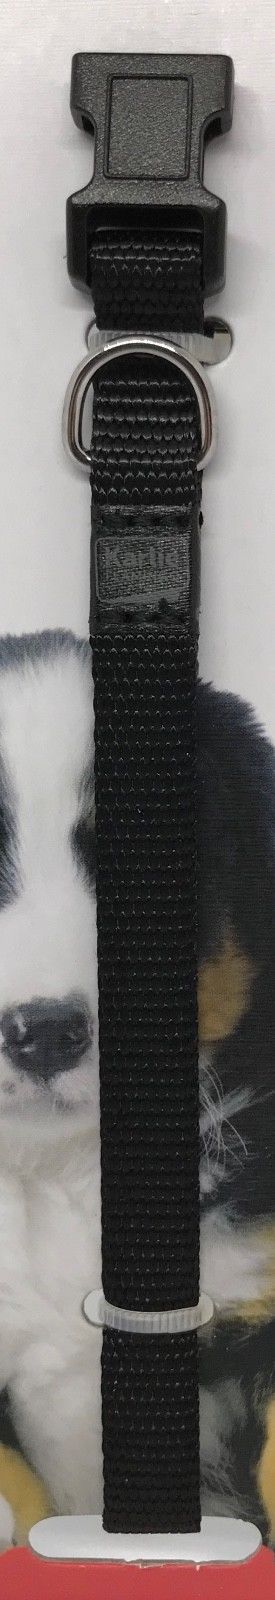 Karlie verstellbares Welpen Hunde Halsband Welpenhalsband 4 Farben 20 30 cm 10mm 253230056952 10